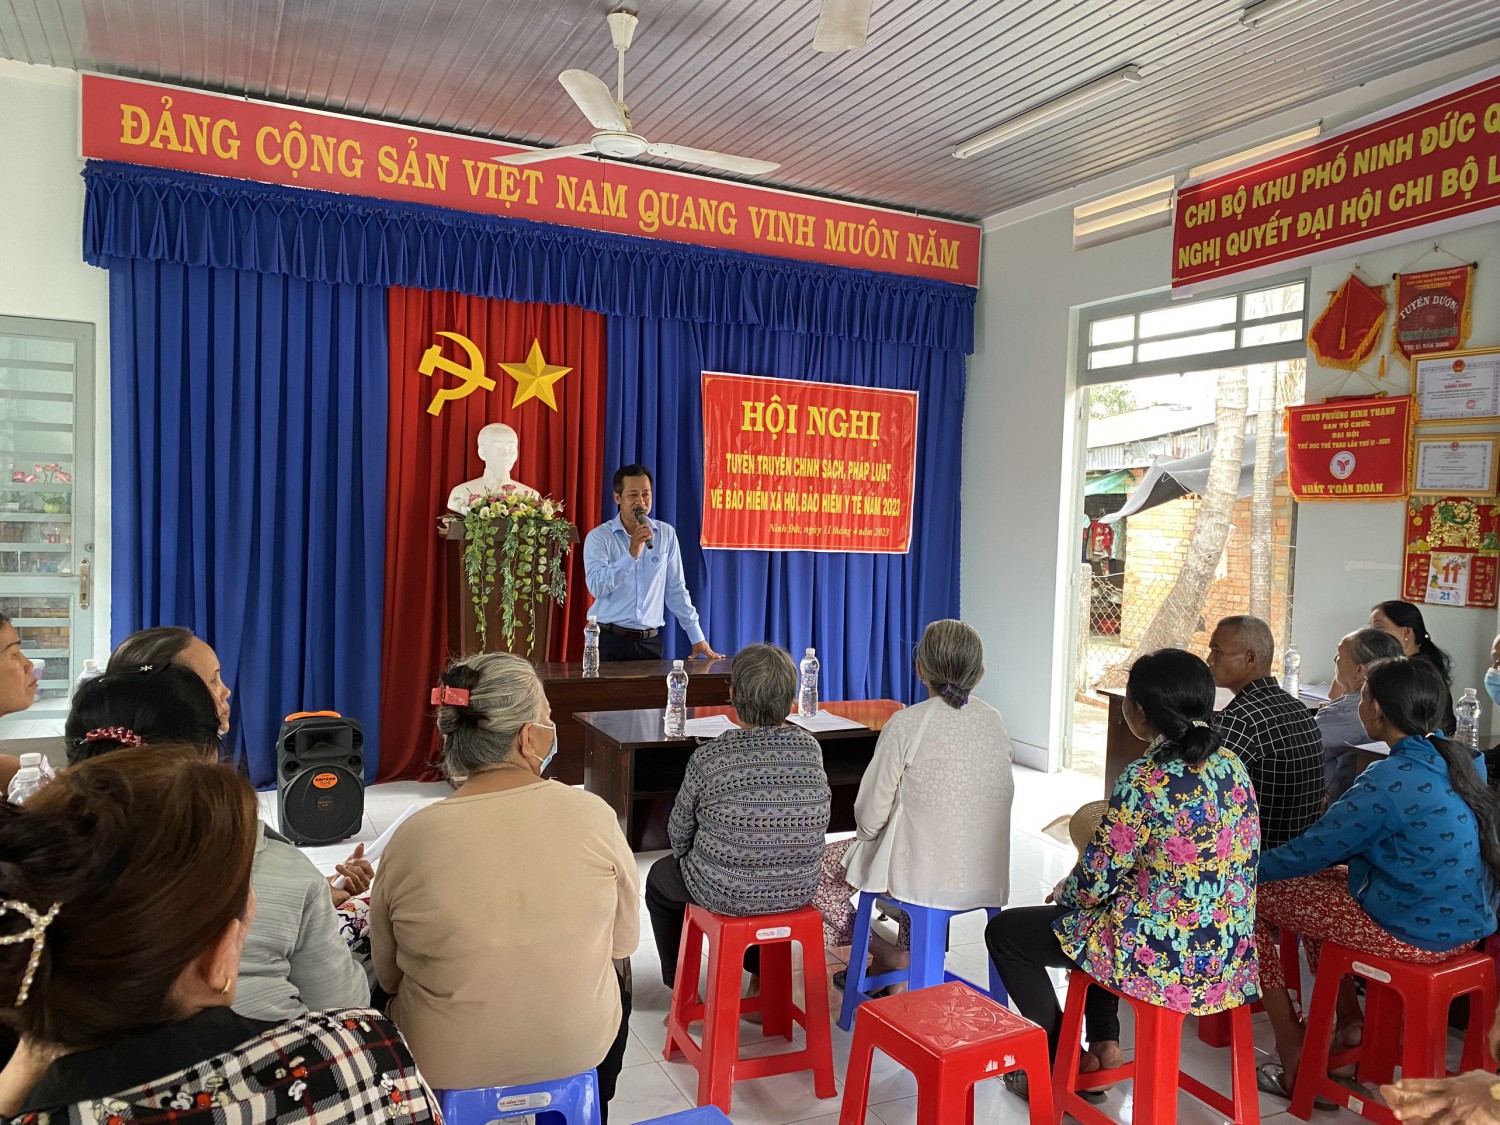 Bảo hiểm xã hội Tỉnh Tây Ninh tổ chức hội nghị tuyên truyền chính sách bảo hiểm xã hội, bảo hiểm y tế cho nhân dân trên địa bàn phường Ninh Thạnh.